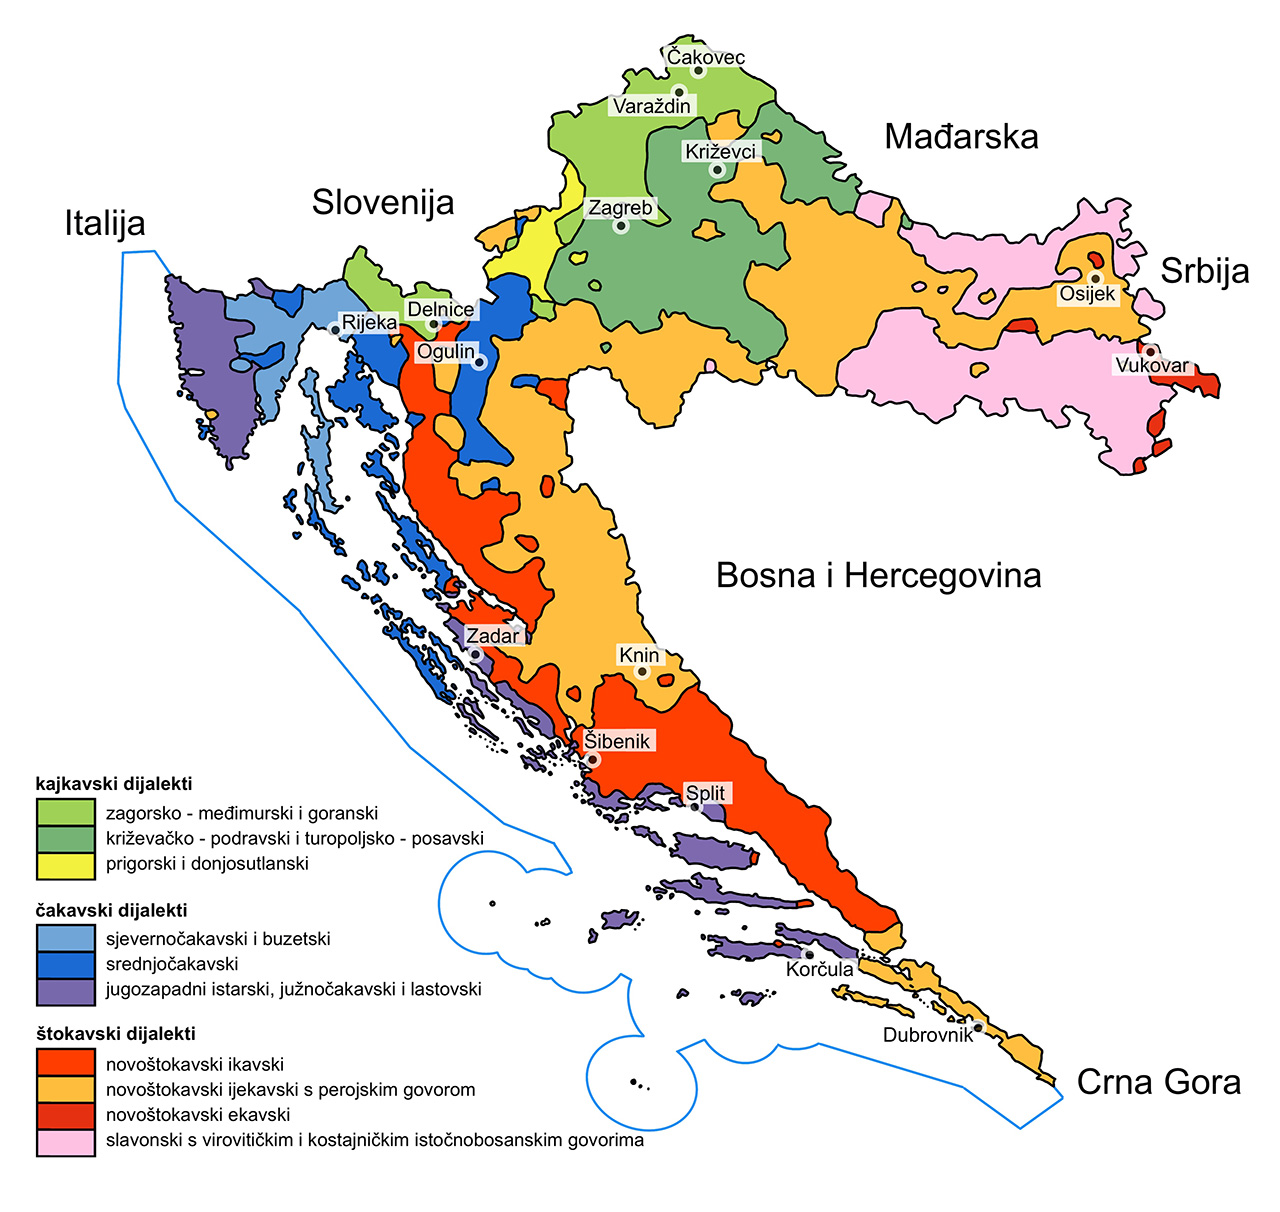 Karta Hrvatske na kojoj su označena područja na kojima se upotrebljavaju kajkavski, štokavski i čakavski dijalekti te dodatne podjele svakog od tri navedena dijalekta. 